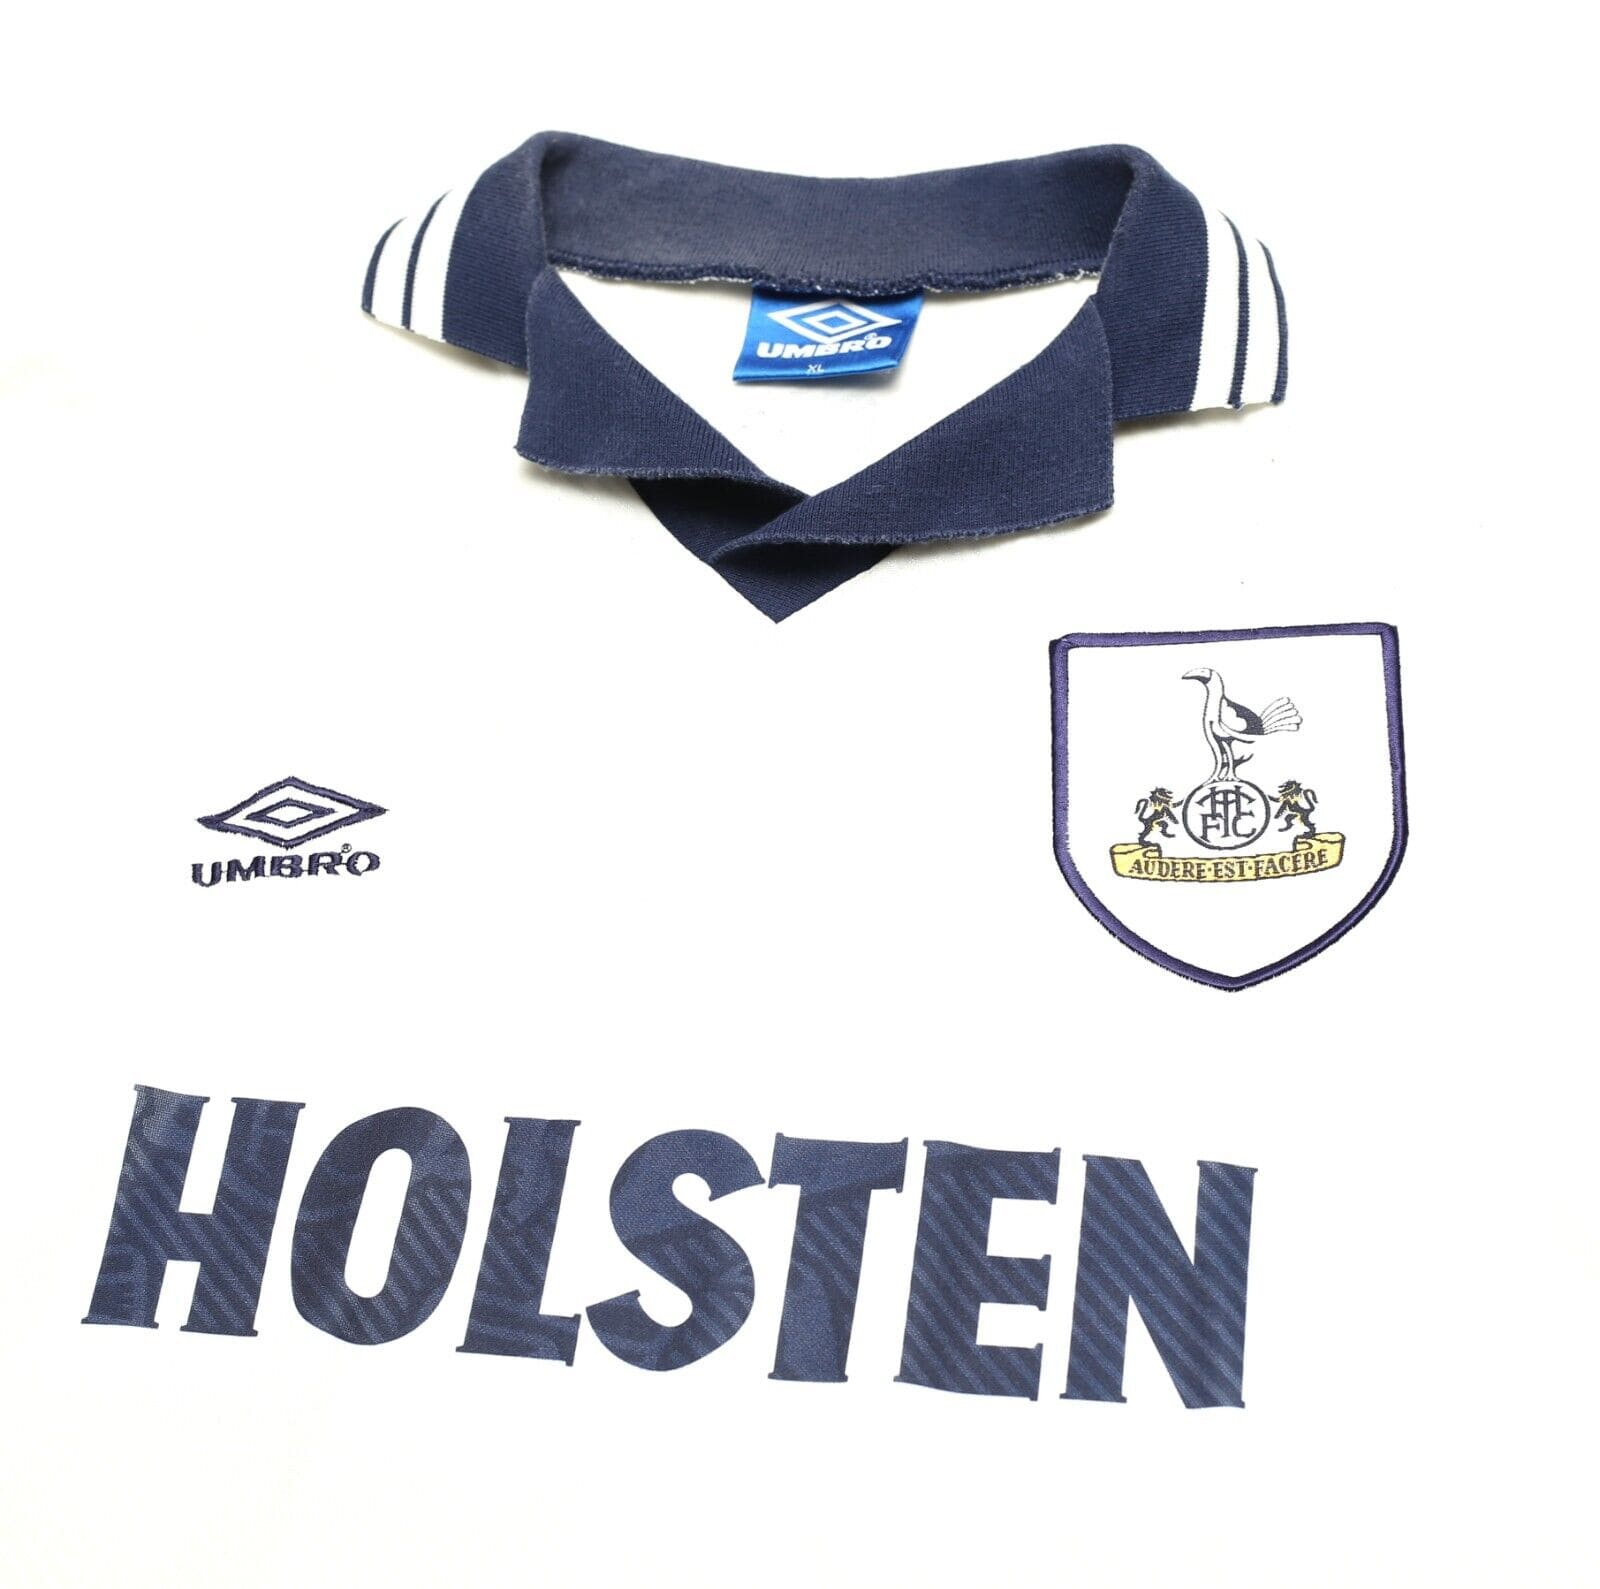 Tottenham Hotspur (Spurs) Away Football Shirt Jersey 1991/1992/1993/1994/1995